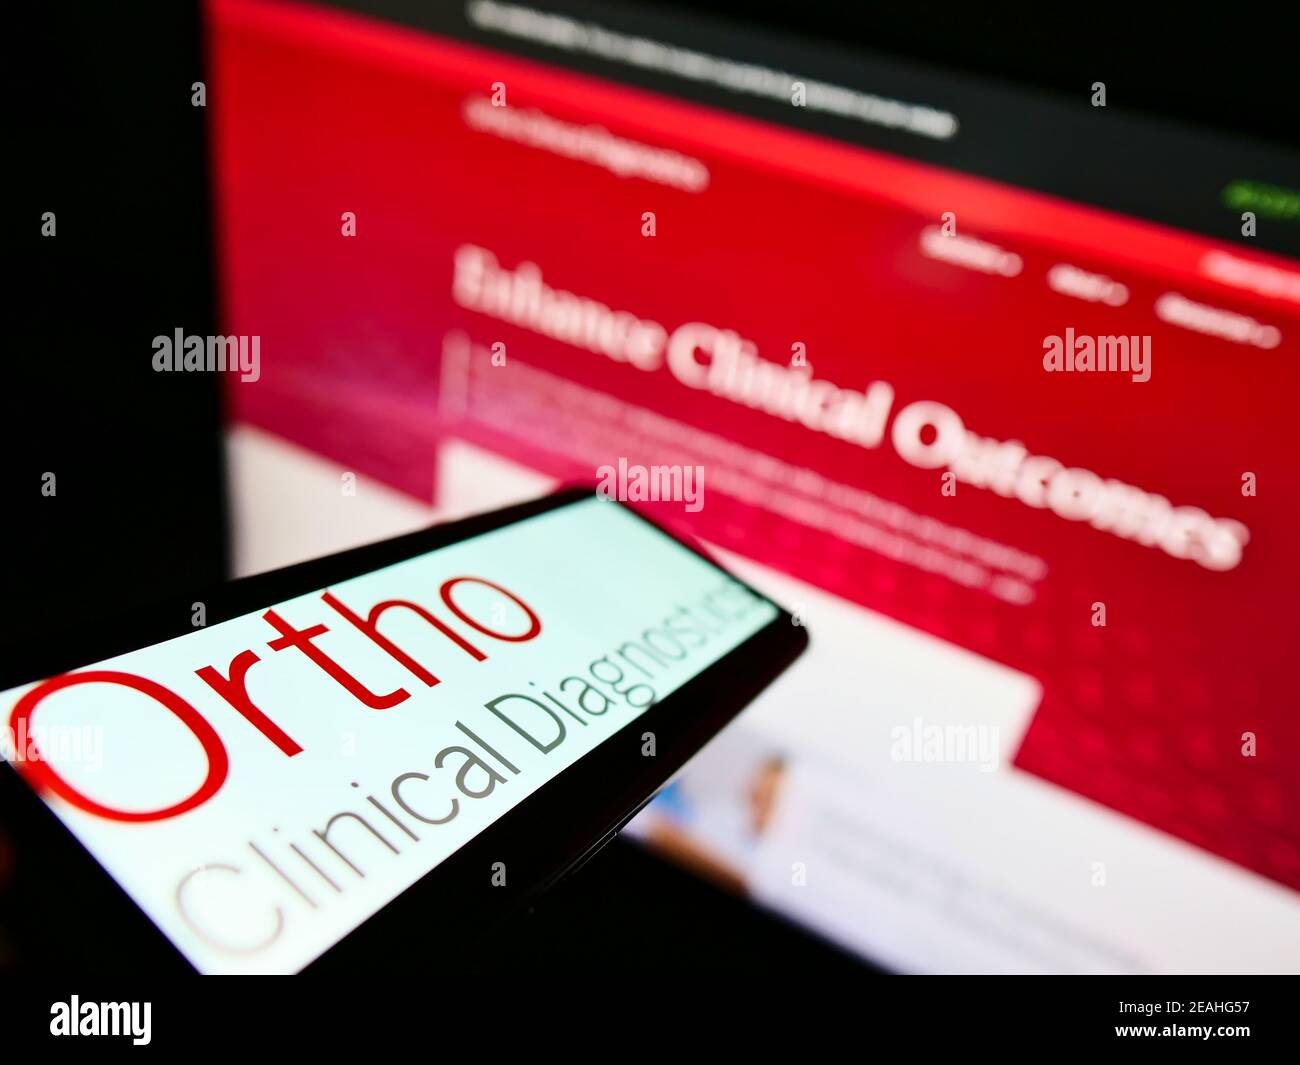 Handy mit Logo der US-amerikanischen medizinischen Diagnostik Unternehmen Ortho Clinical Diagnostics auf dem Bildschirm vor der Website. Fokus auf der Mitte des Telefondisplays. Stockfoto